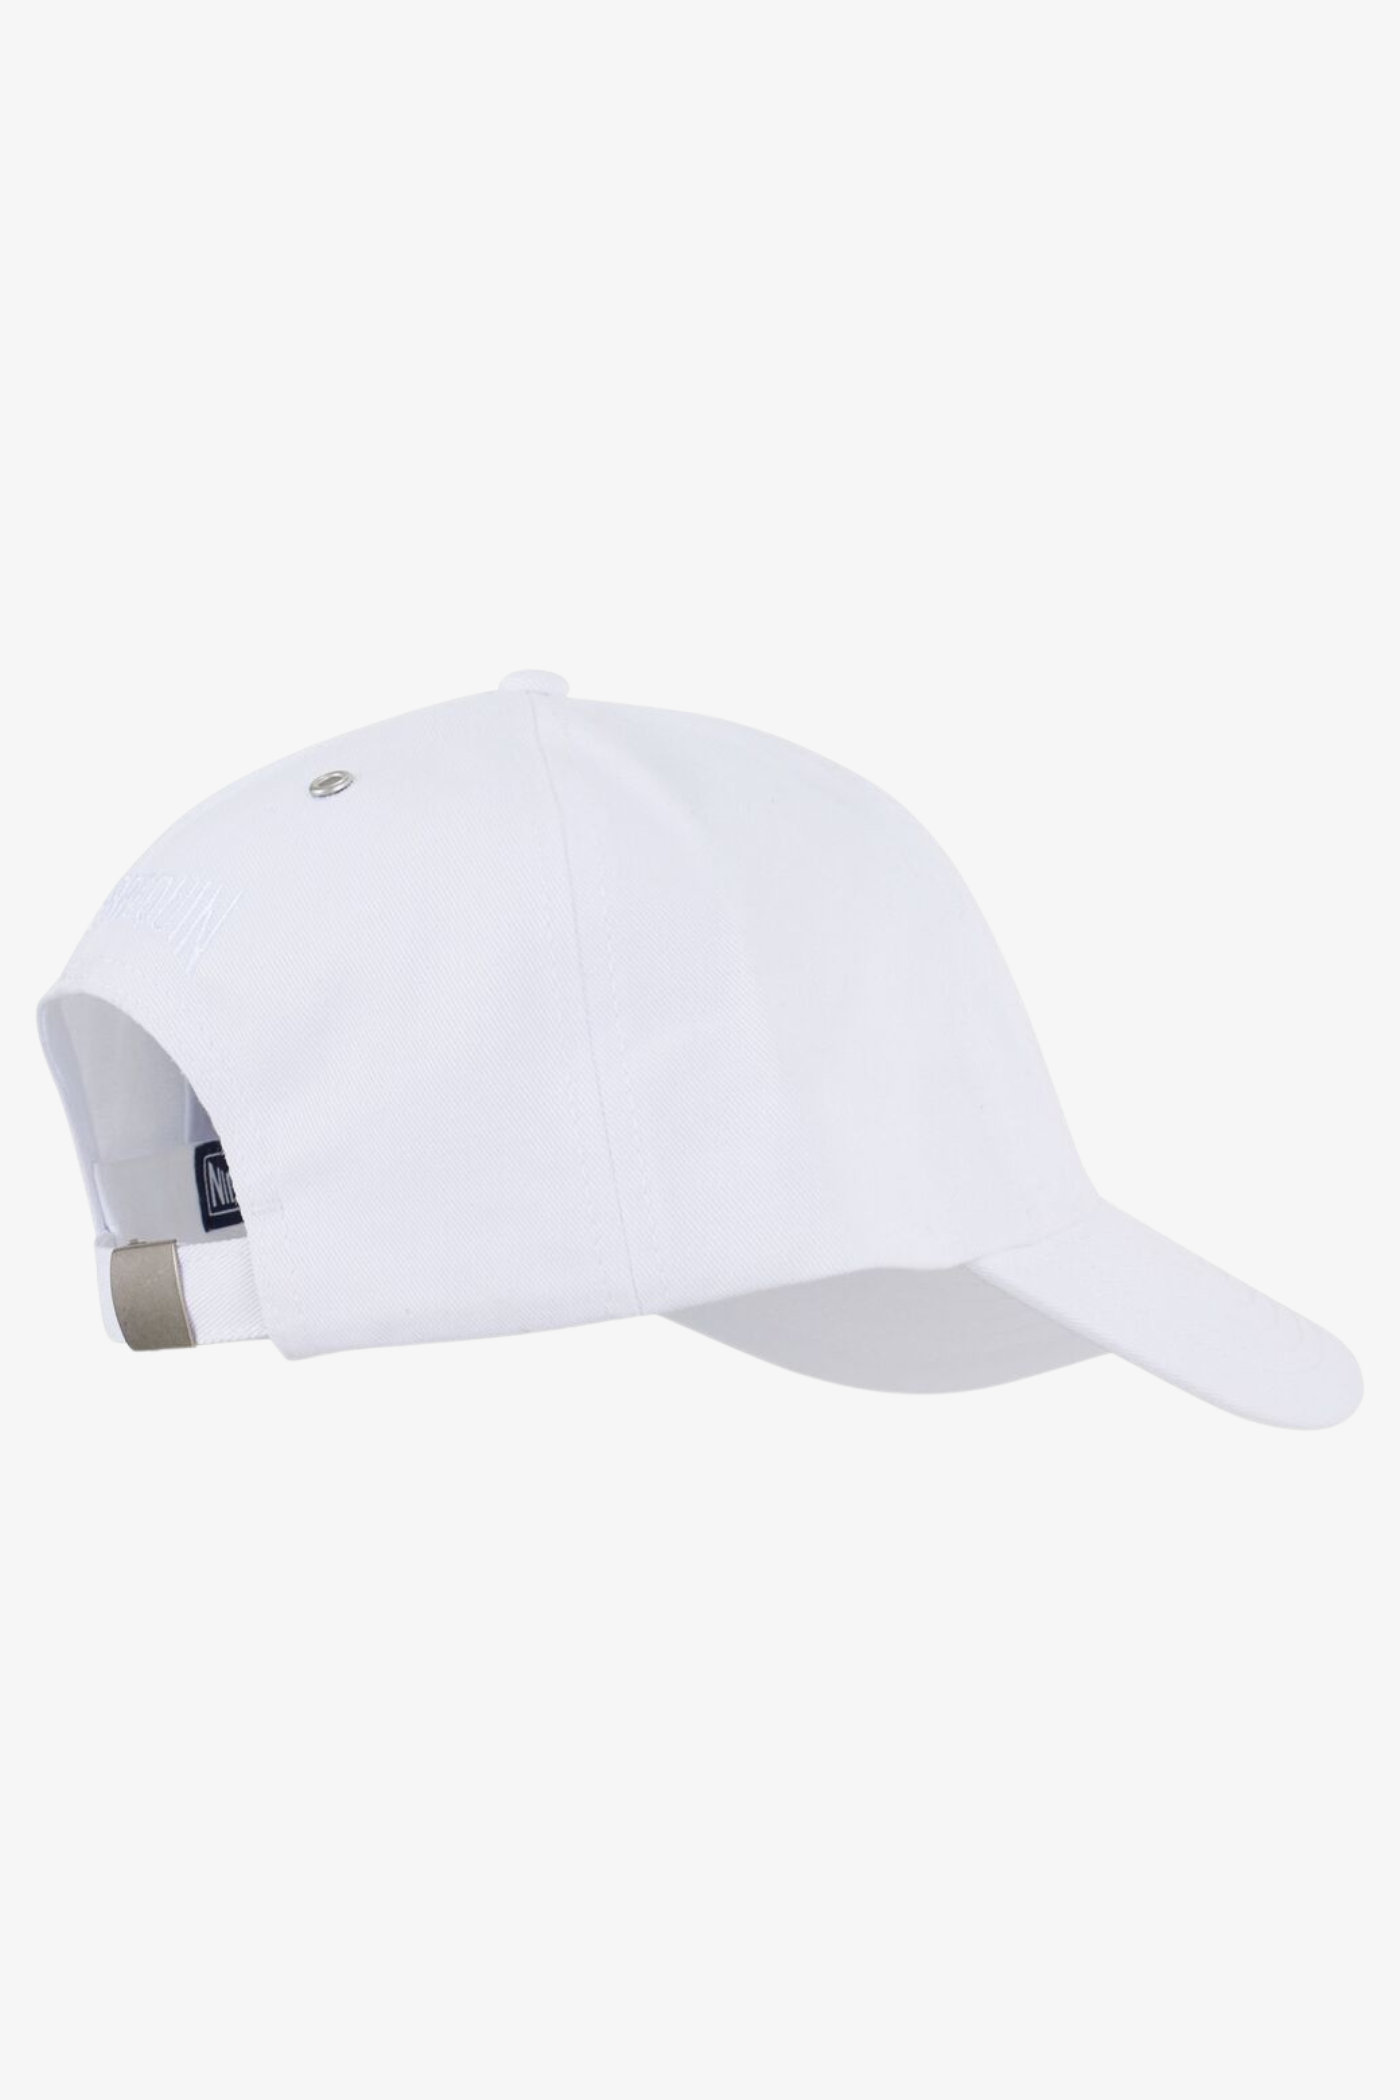 UNISEX CAP SOLID - WHITE